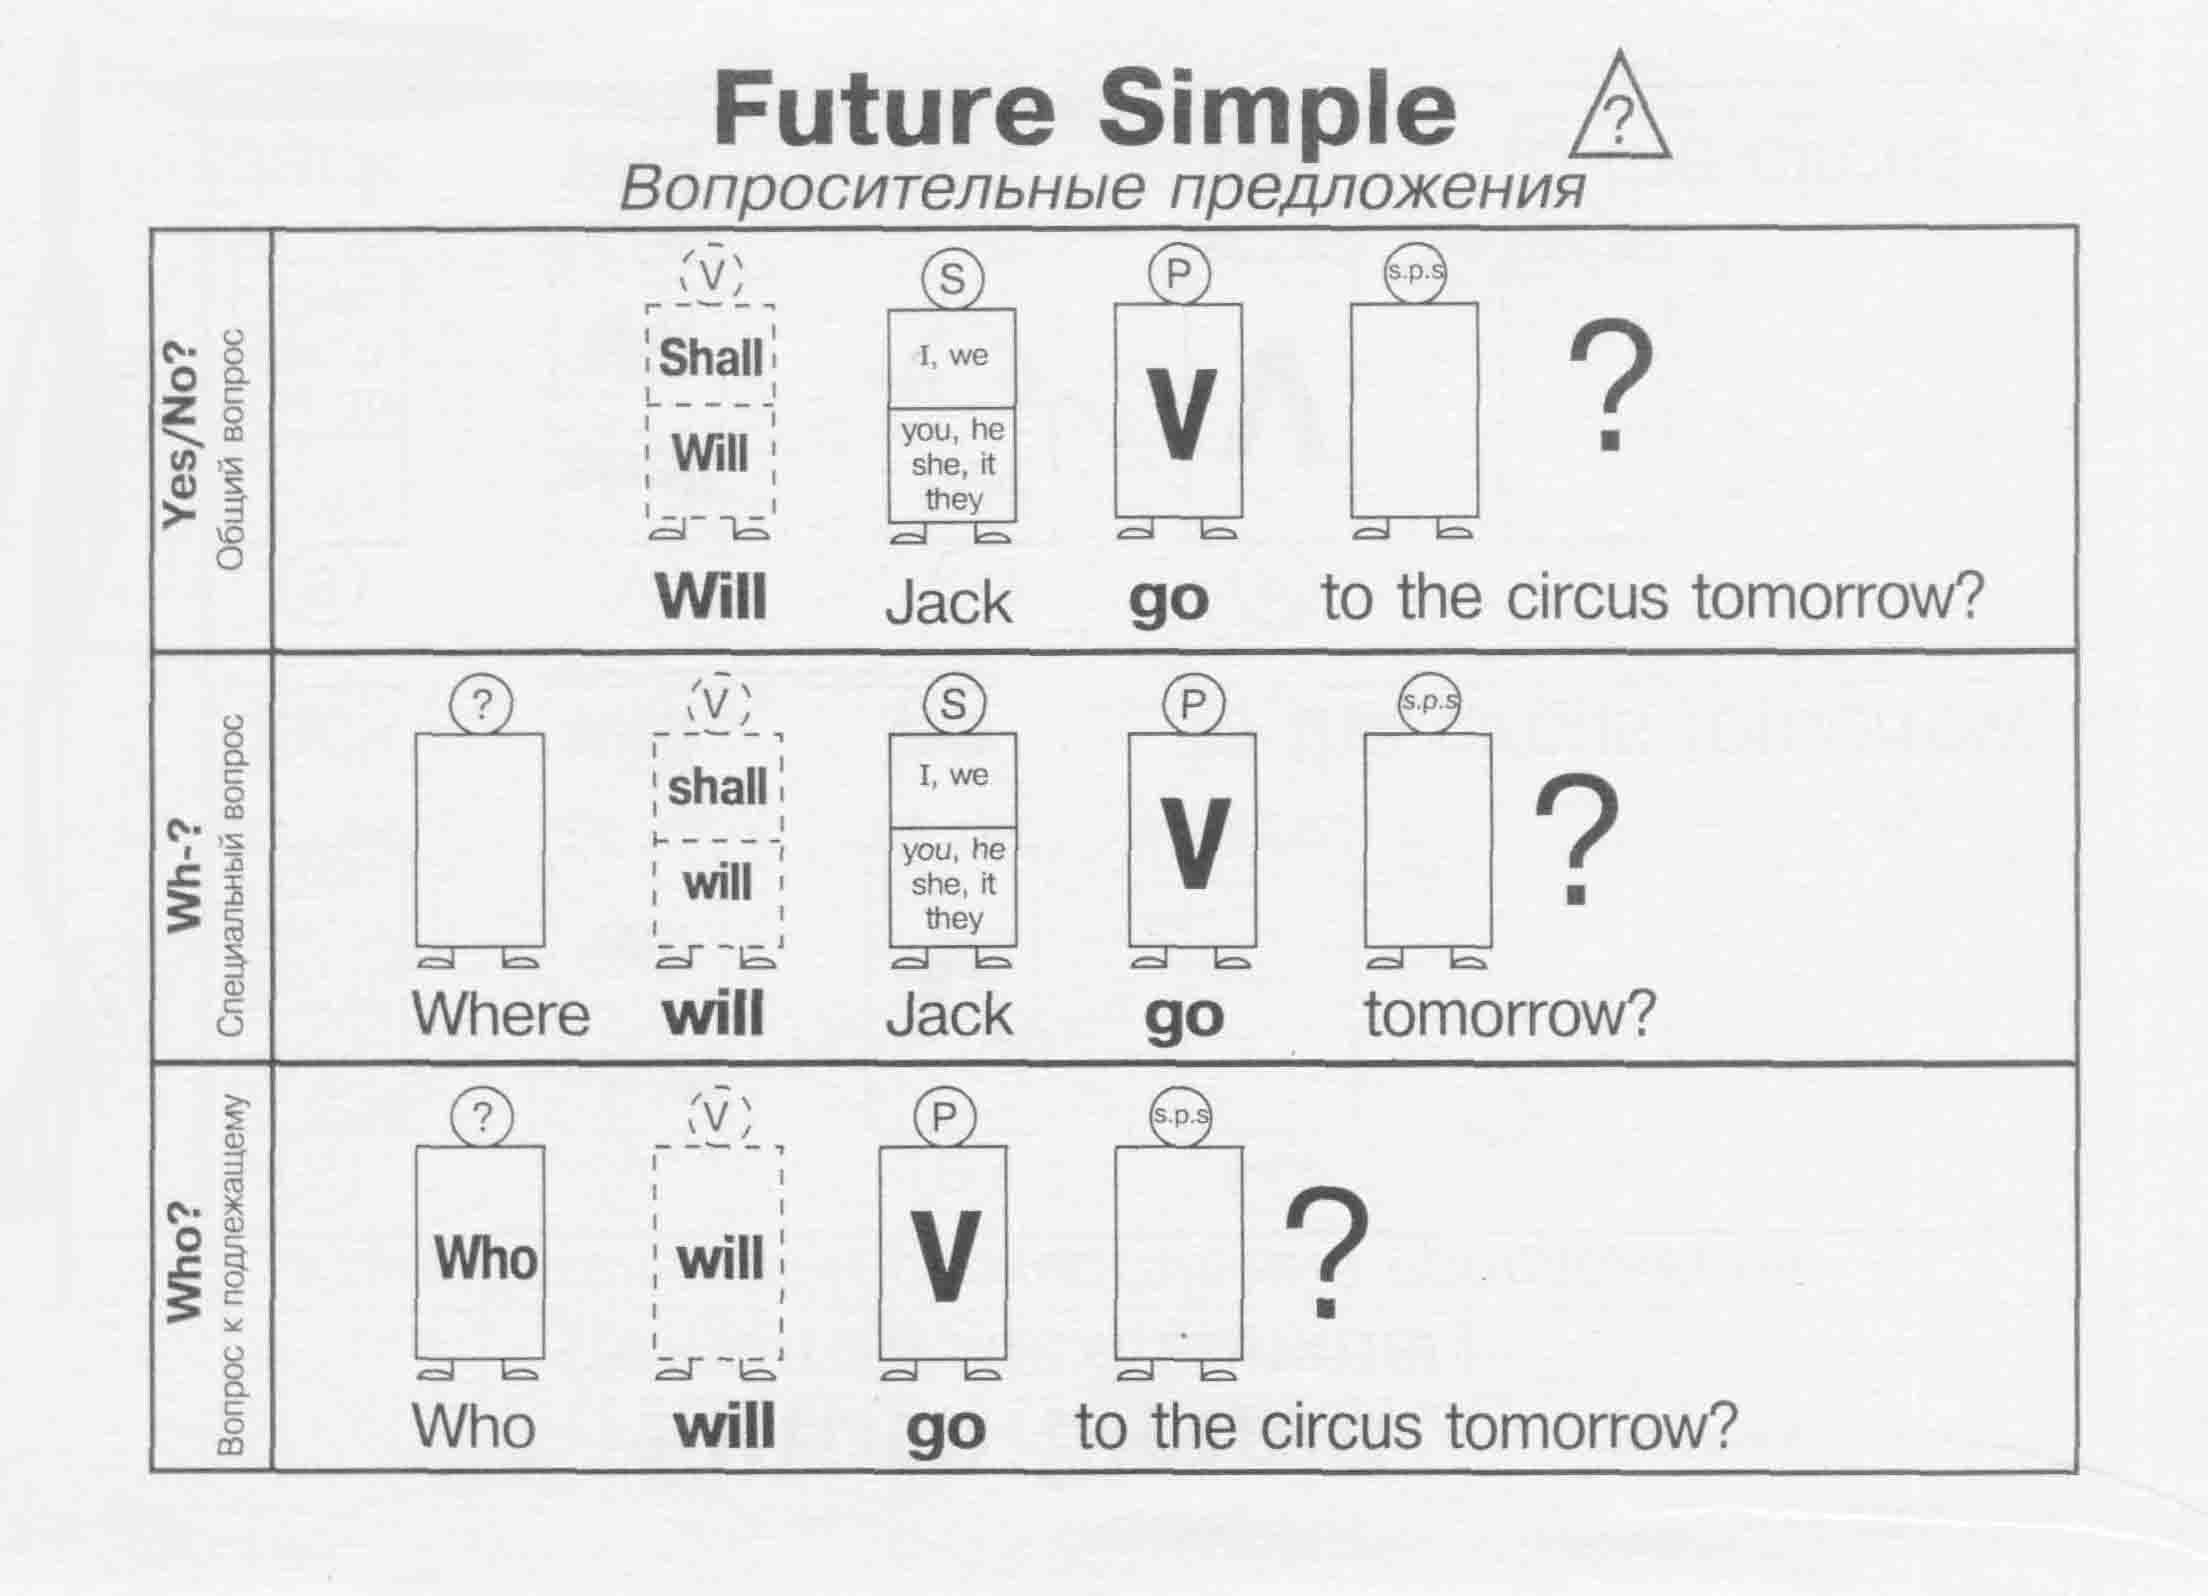 Future simple правильные. Future simple схема построения предложения. Схема составления предложения в Future simple. Future simple вопросительные предложения. Future simple схема построения.